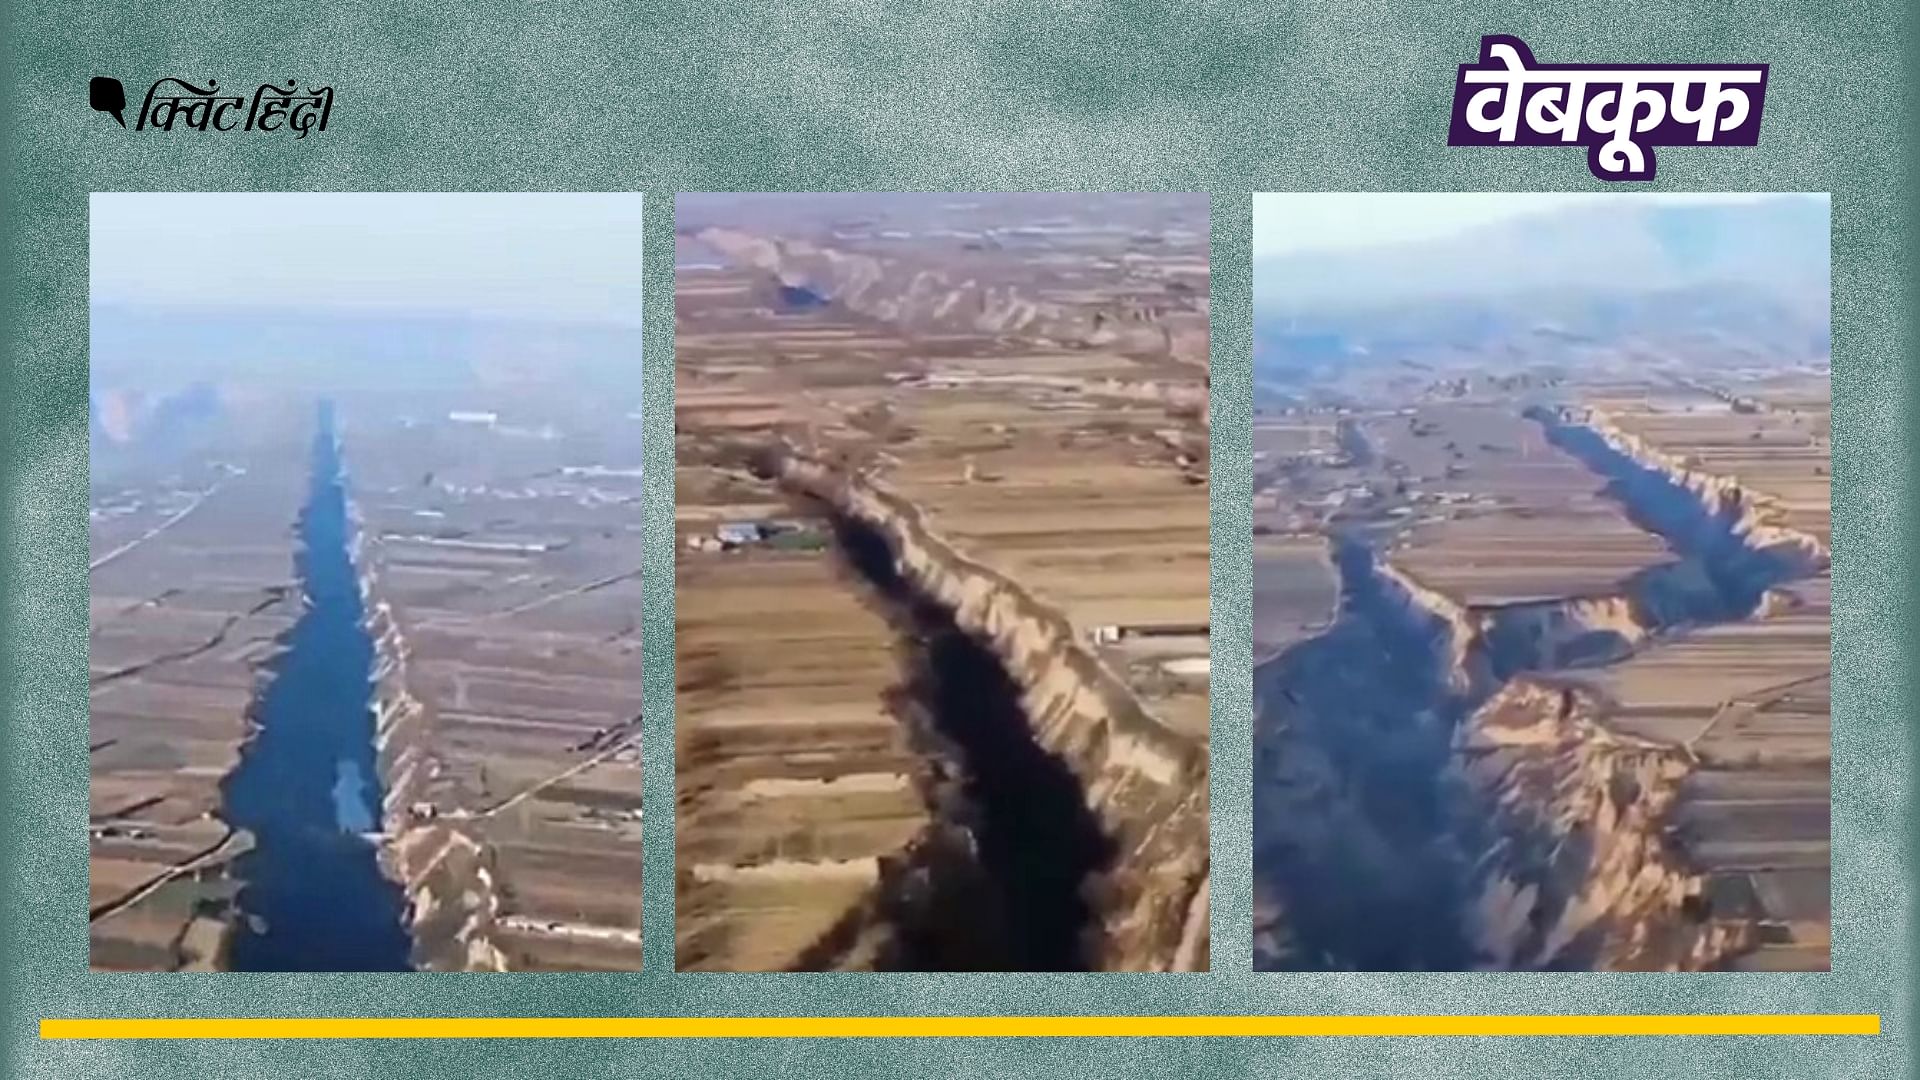 <div class="paragraphs"><p>तुर्की - सीरिया में आए भूकंप से जोड़कर वायरल है ये वीडियो</p></div>